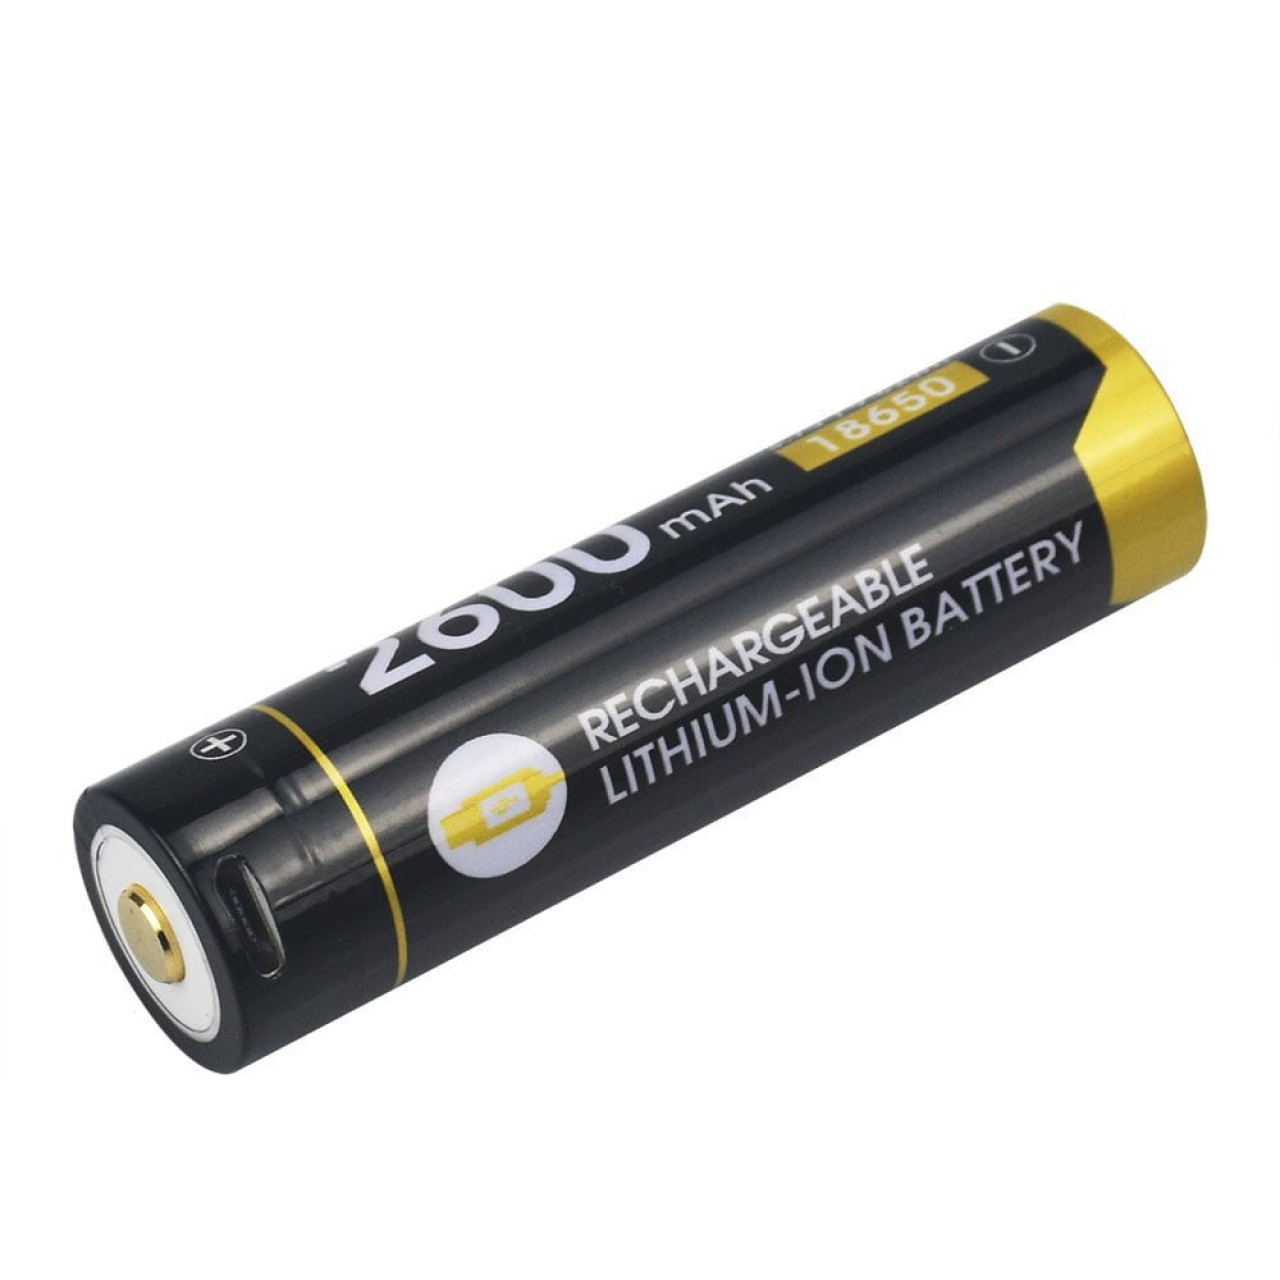 Batéria dobíjacia R26 2600 mAh micro USB typ 18650